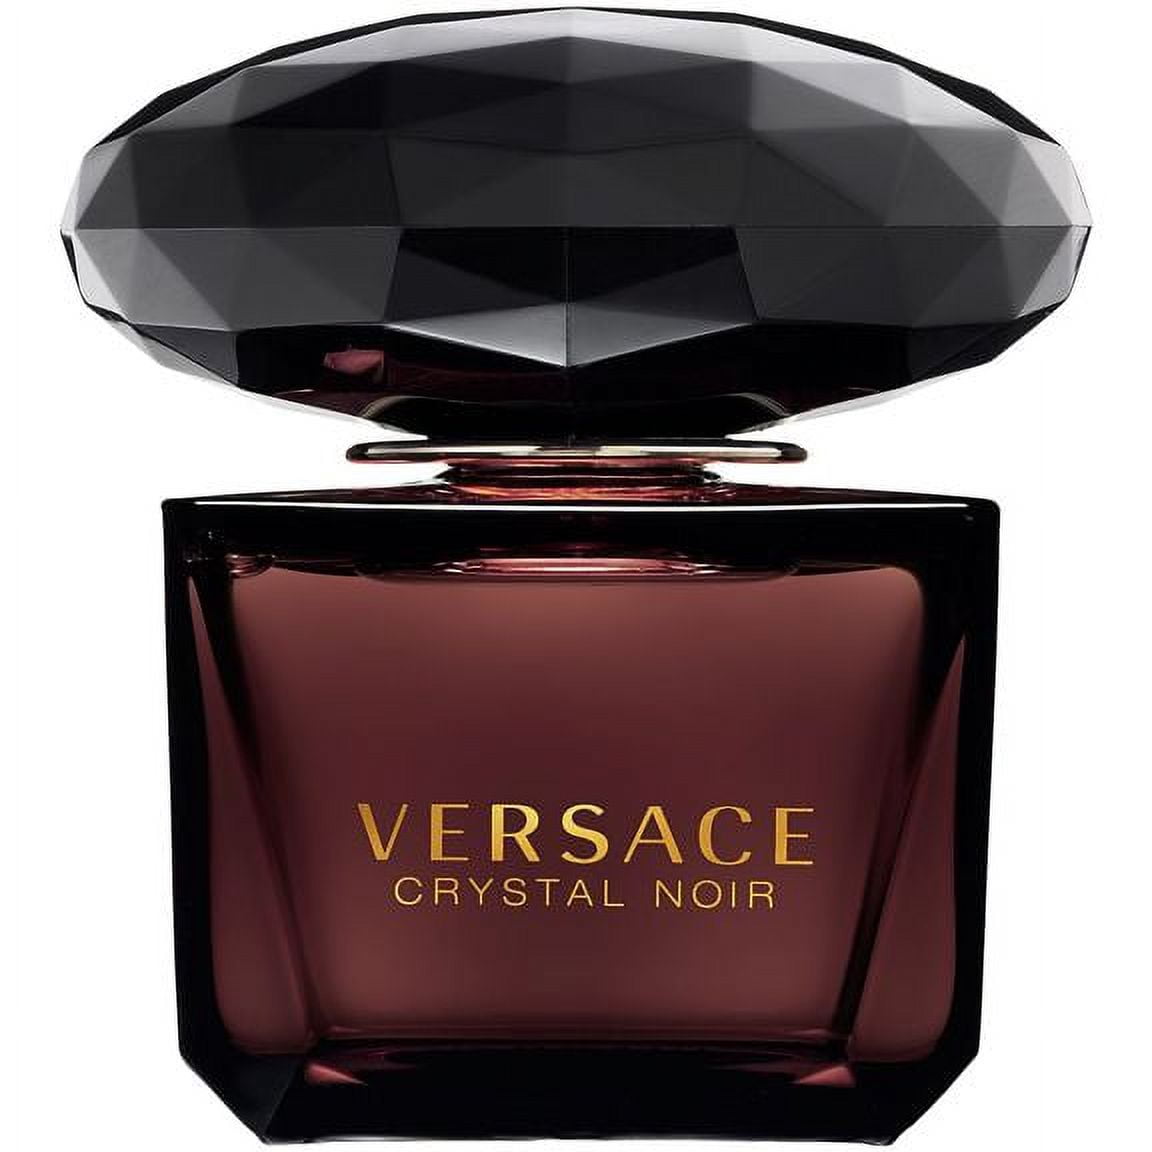 Versace Women's Crystal Noir Mini Eau de Toilette Perfume - 0.17 fl oz bottle